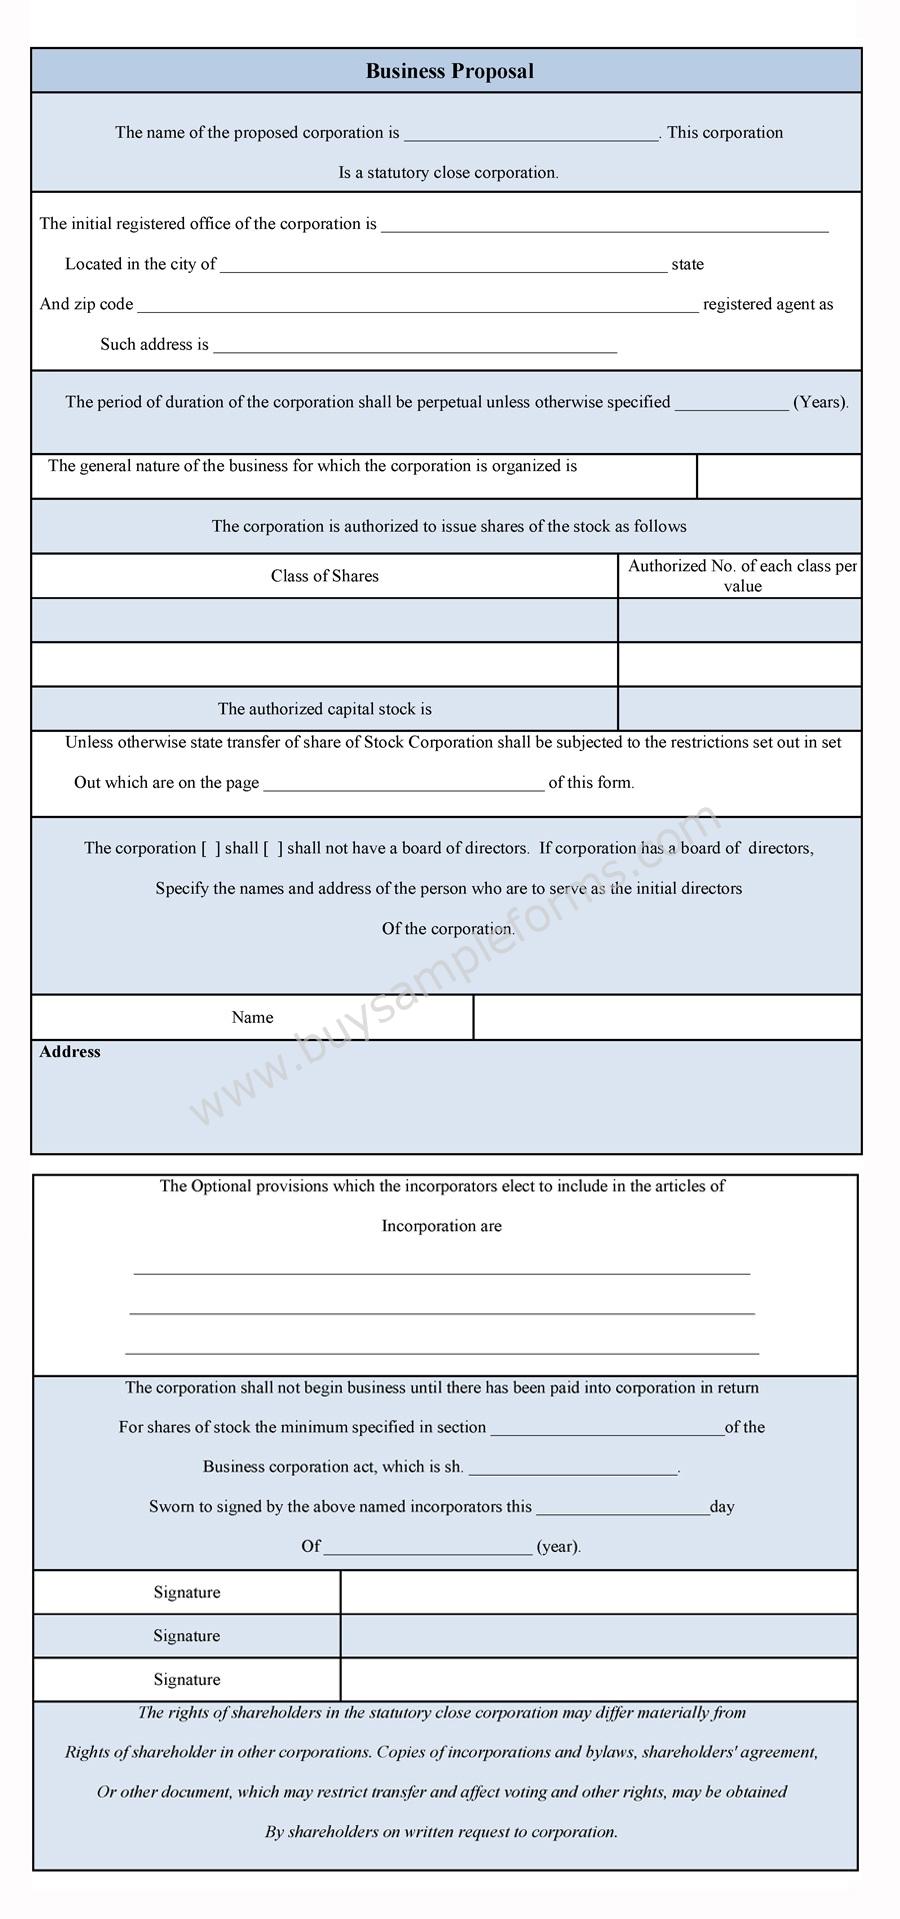 Business Proposal Form | Business Proposal Format